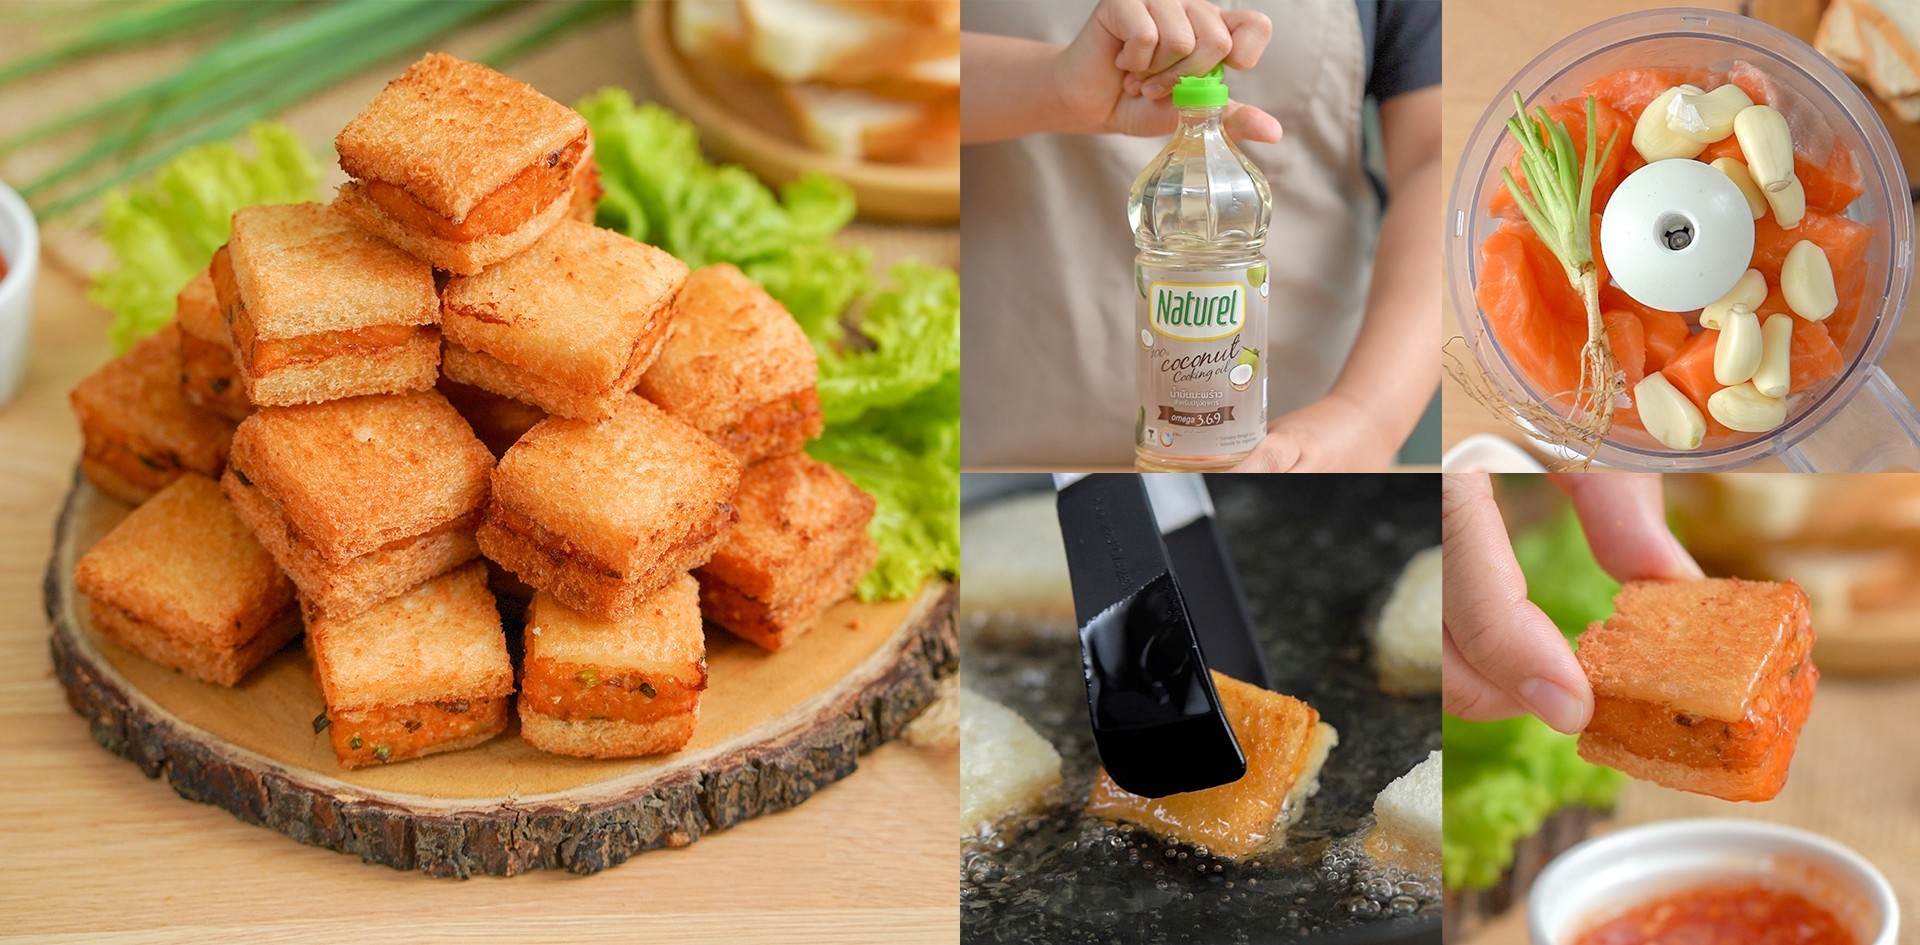 วิธีทำ “แซนด์วิชแซลมอนทอด” เมนูทอดขนมปังกรอบแซลมอนนุ่ม กินได้ทั้งบ้าน! เมนูอาหารว่าง